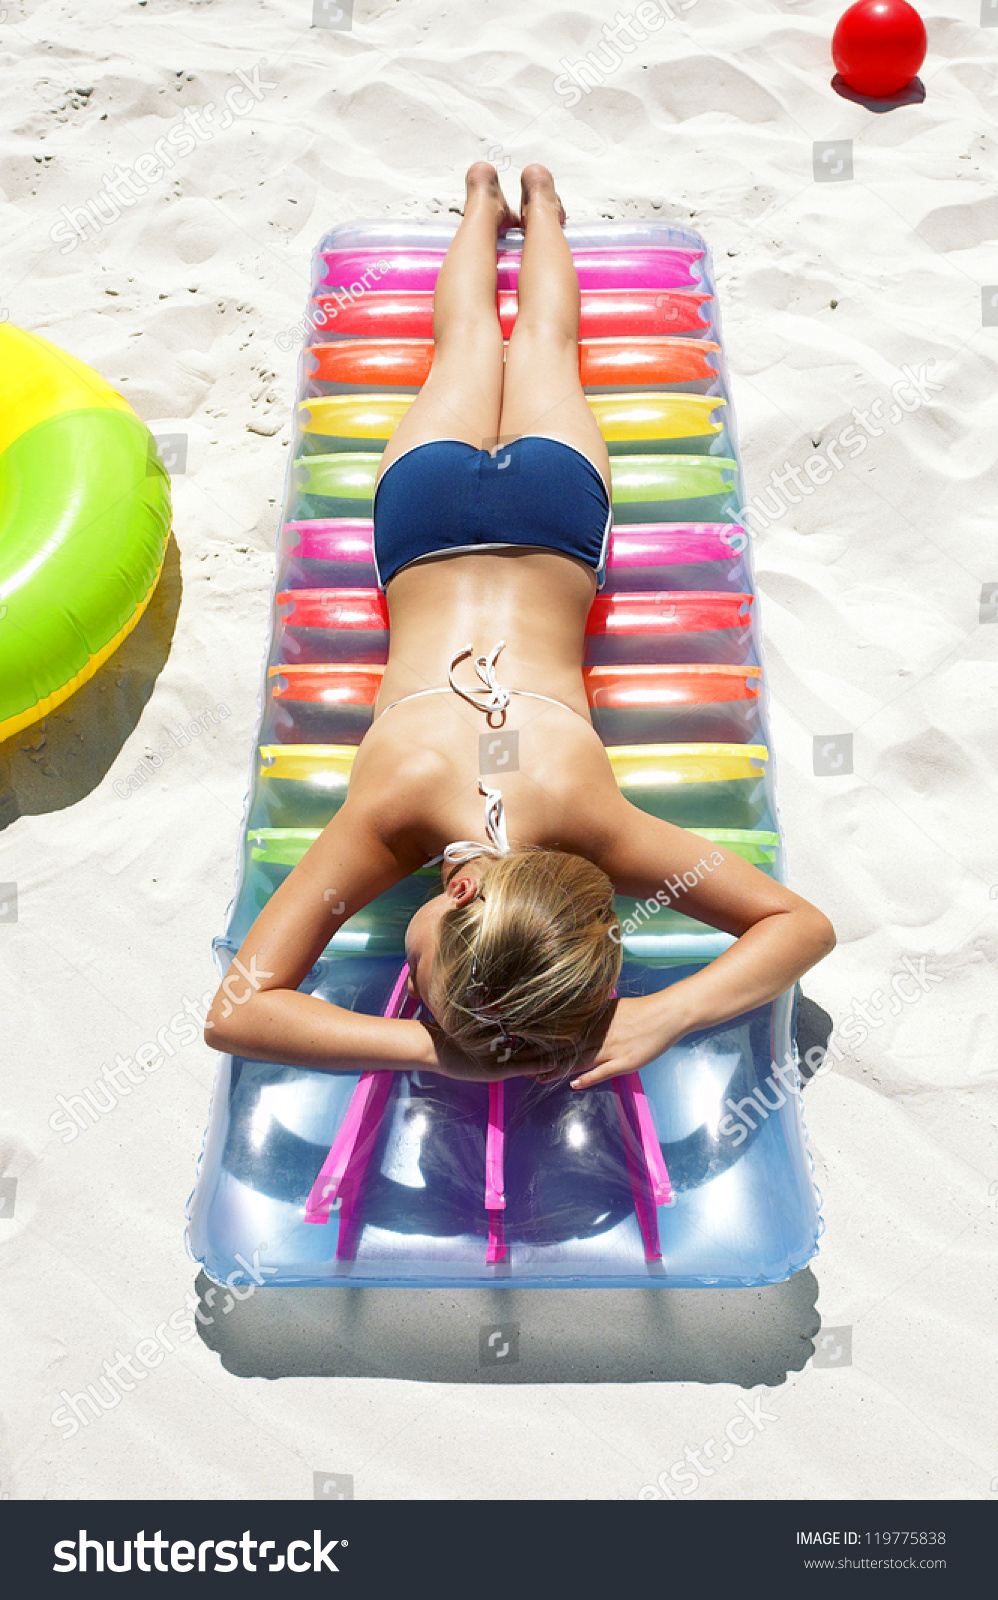 Woman Sunbathing On Her Stomach Wearing Shutterstock